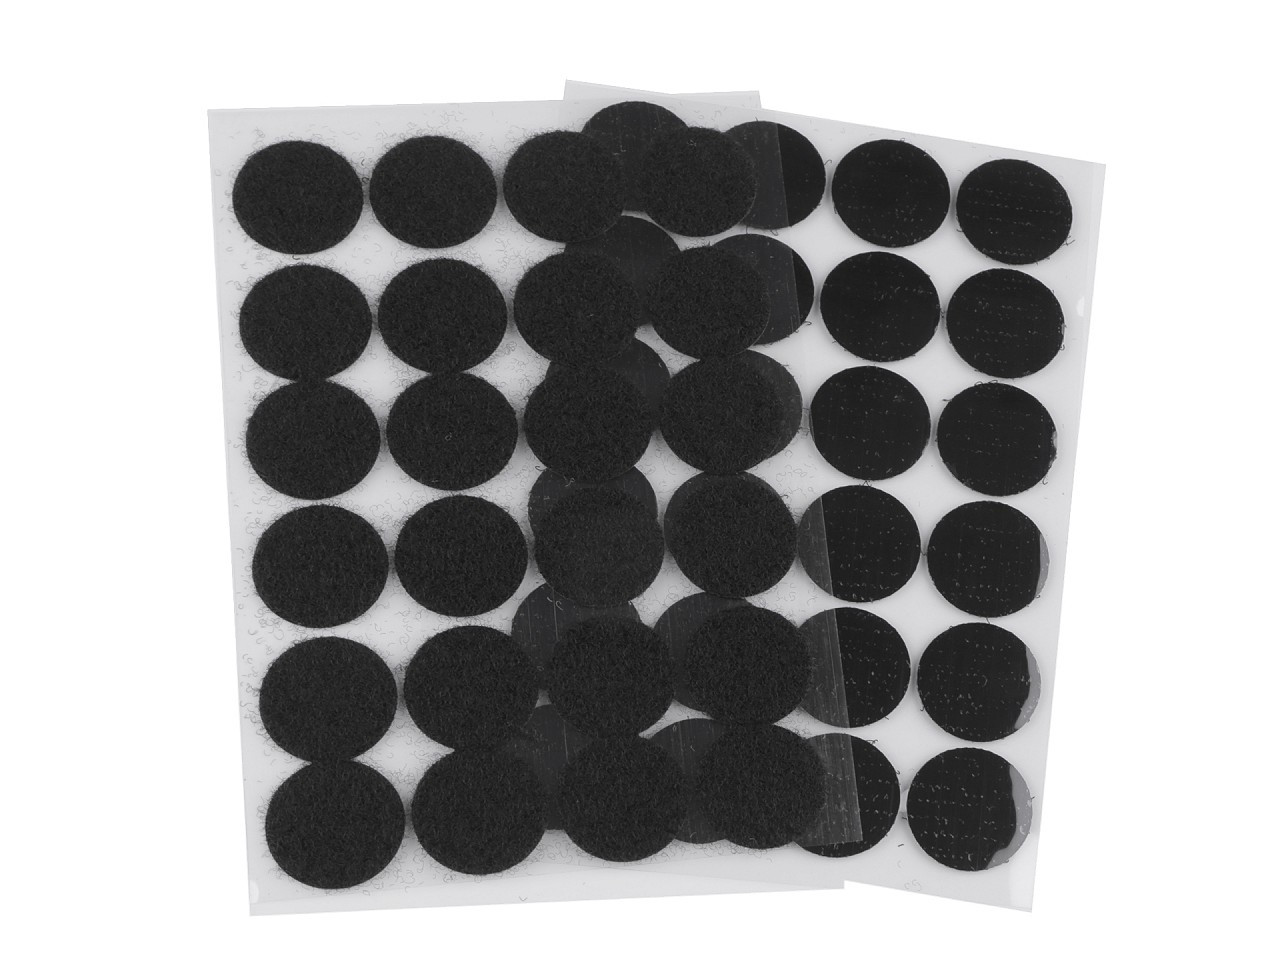 Suchý zip samolepicí kolečka Ø25 mm, barva 2 černá